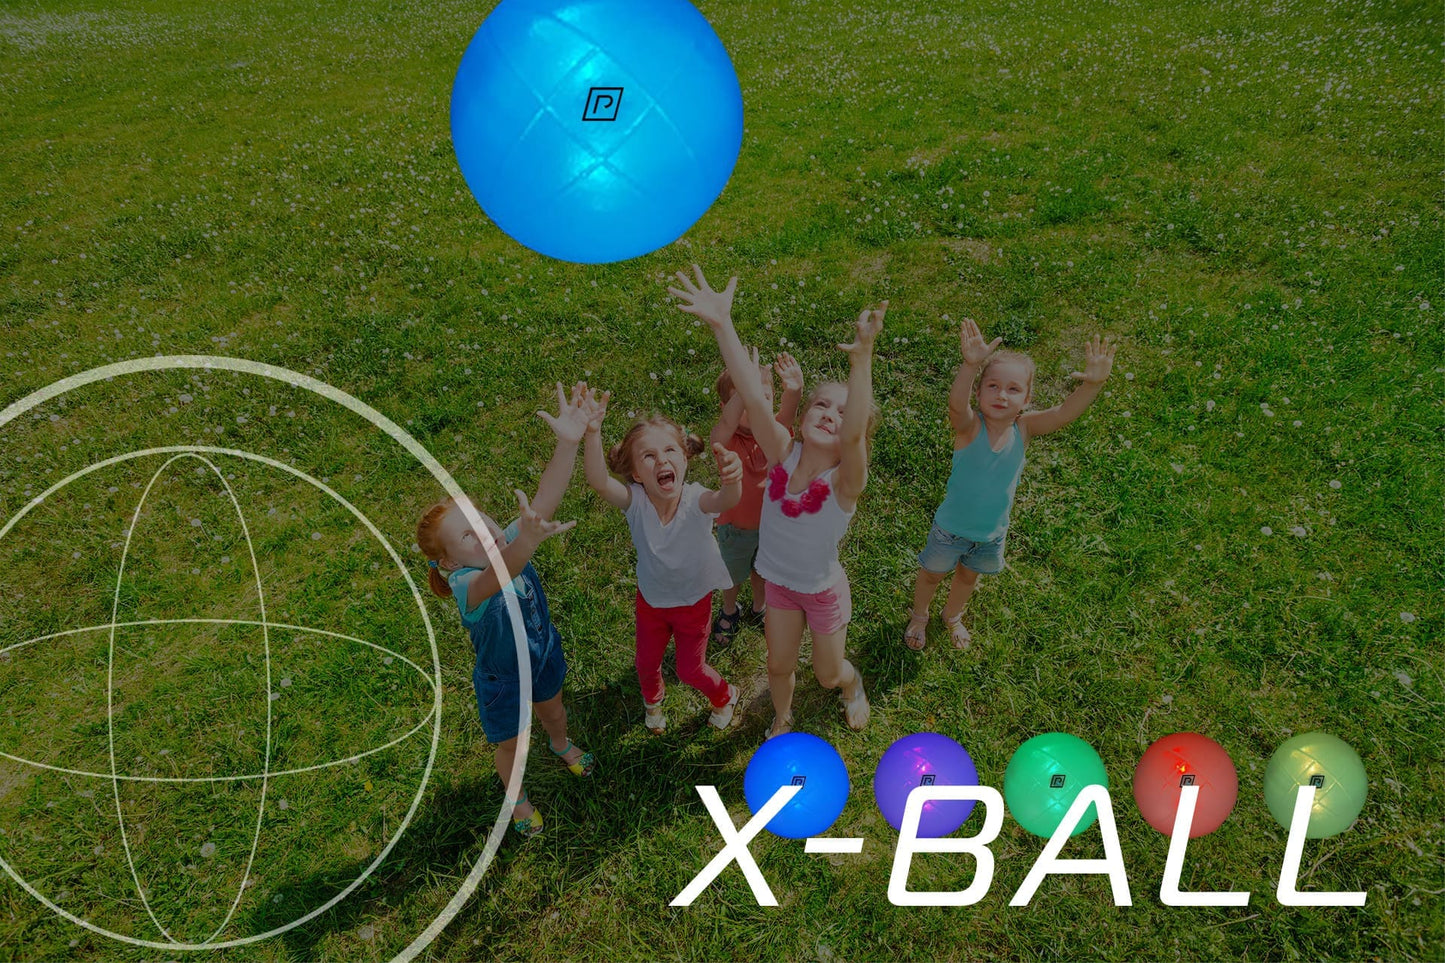 X-BALL